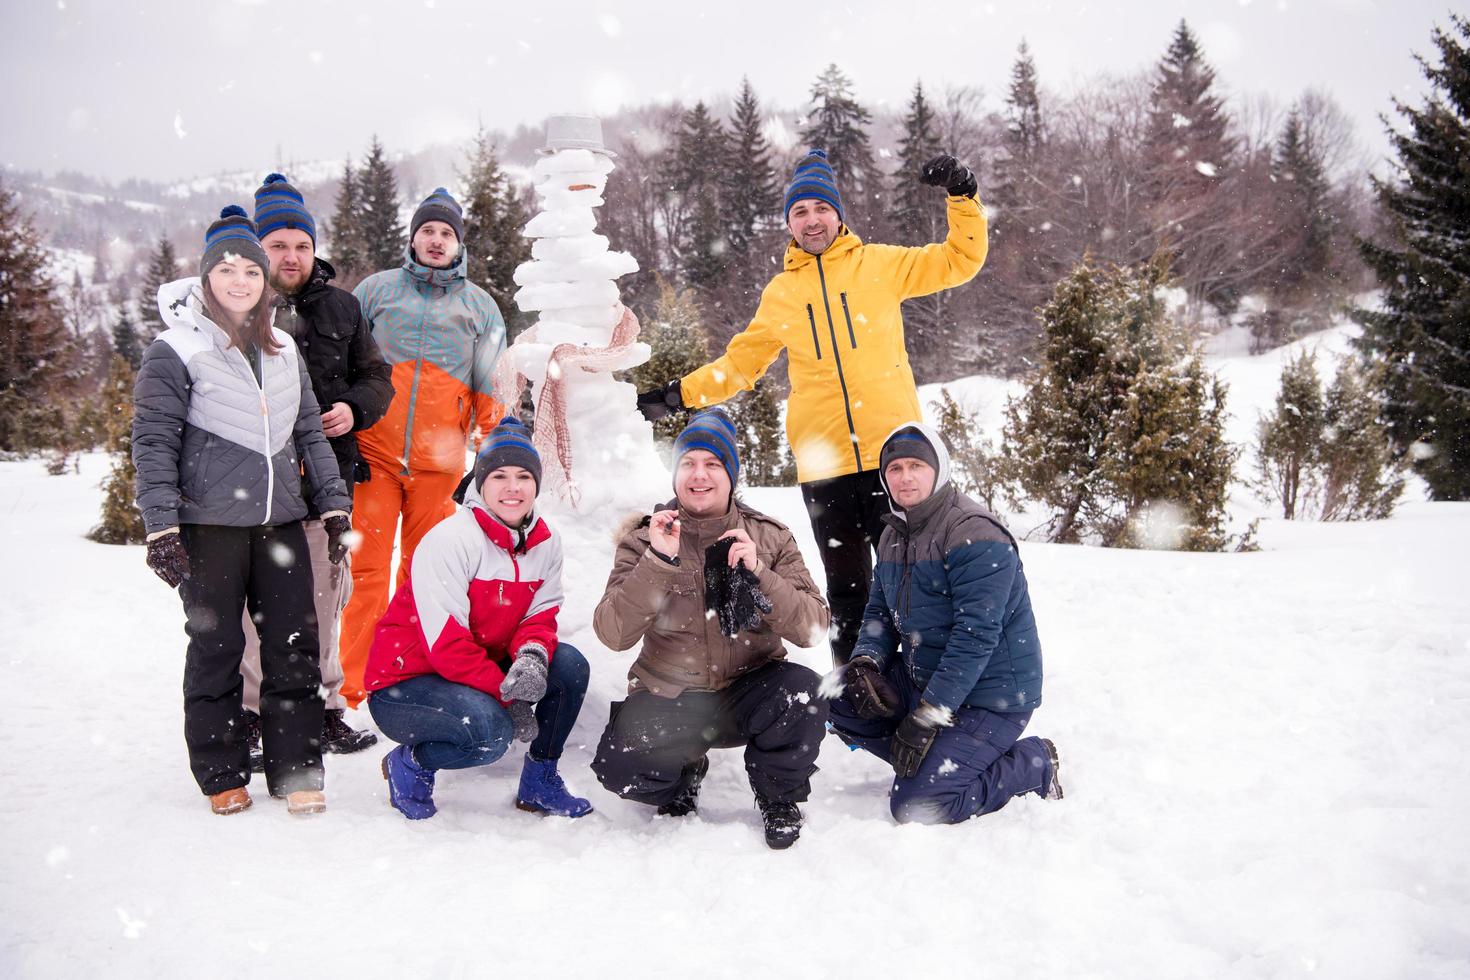 Portrait de groupe de jeunes posant avec bonhomme de neige photo